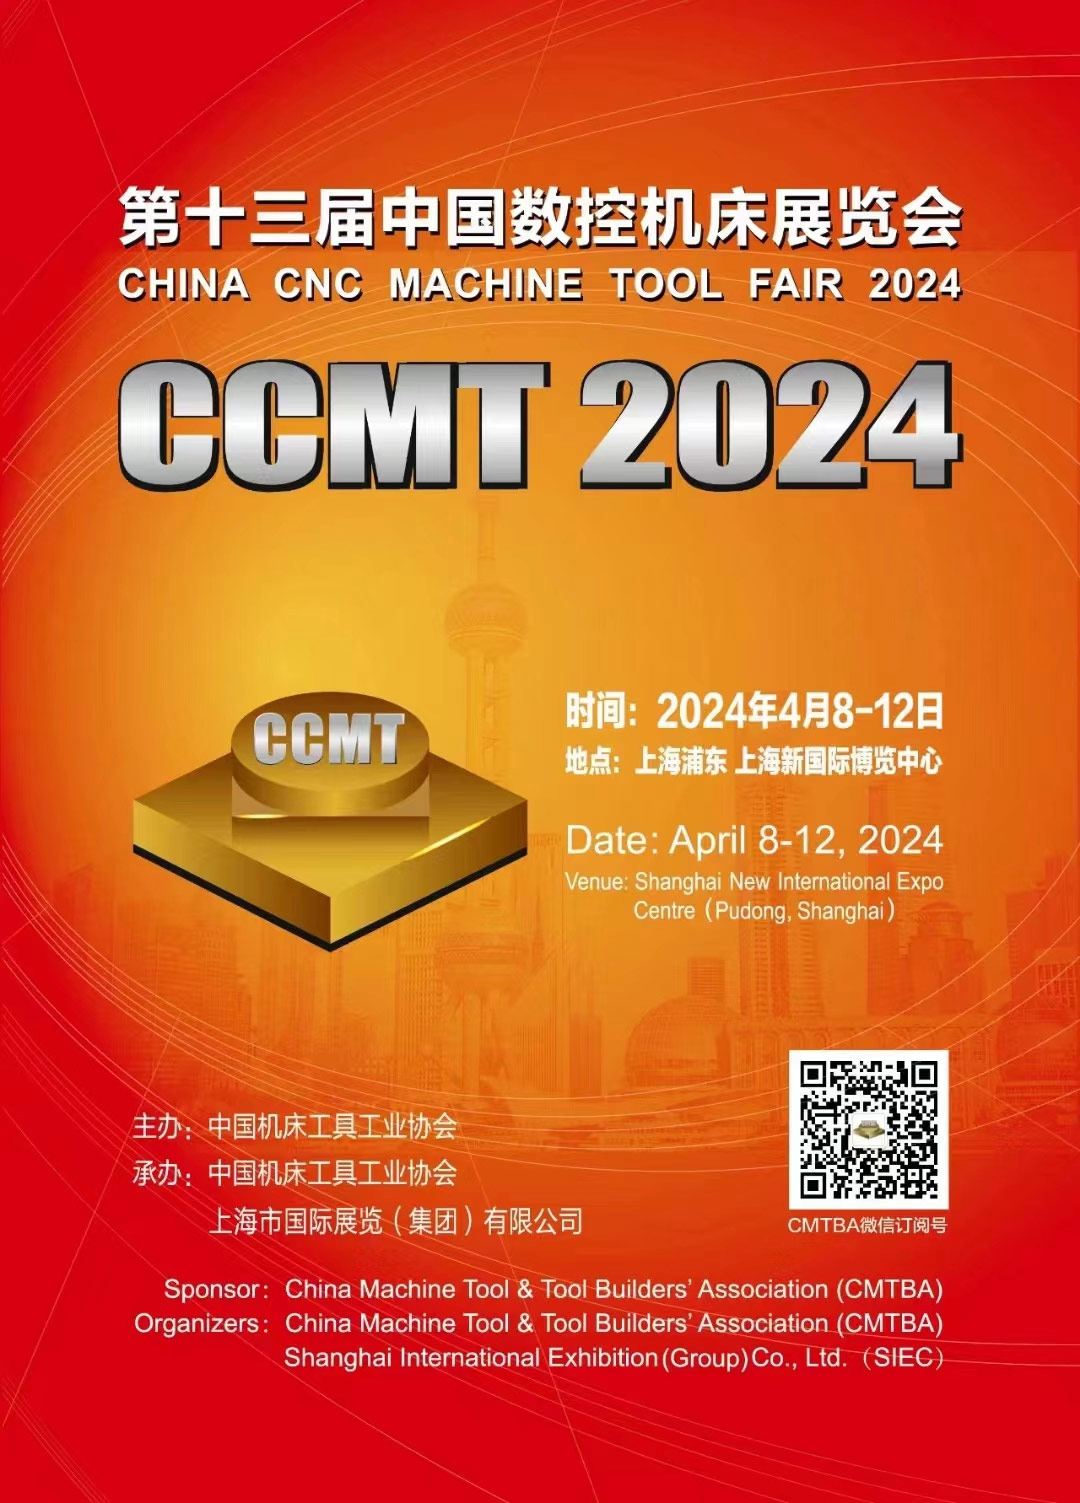 Máquina-ferramenta CNC222mp